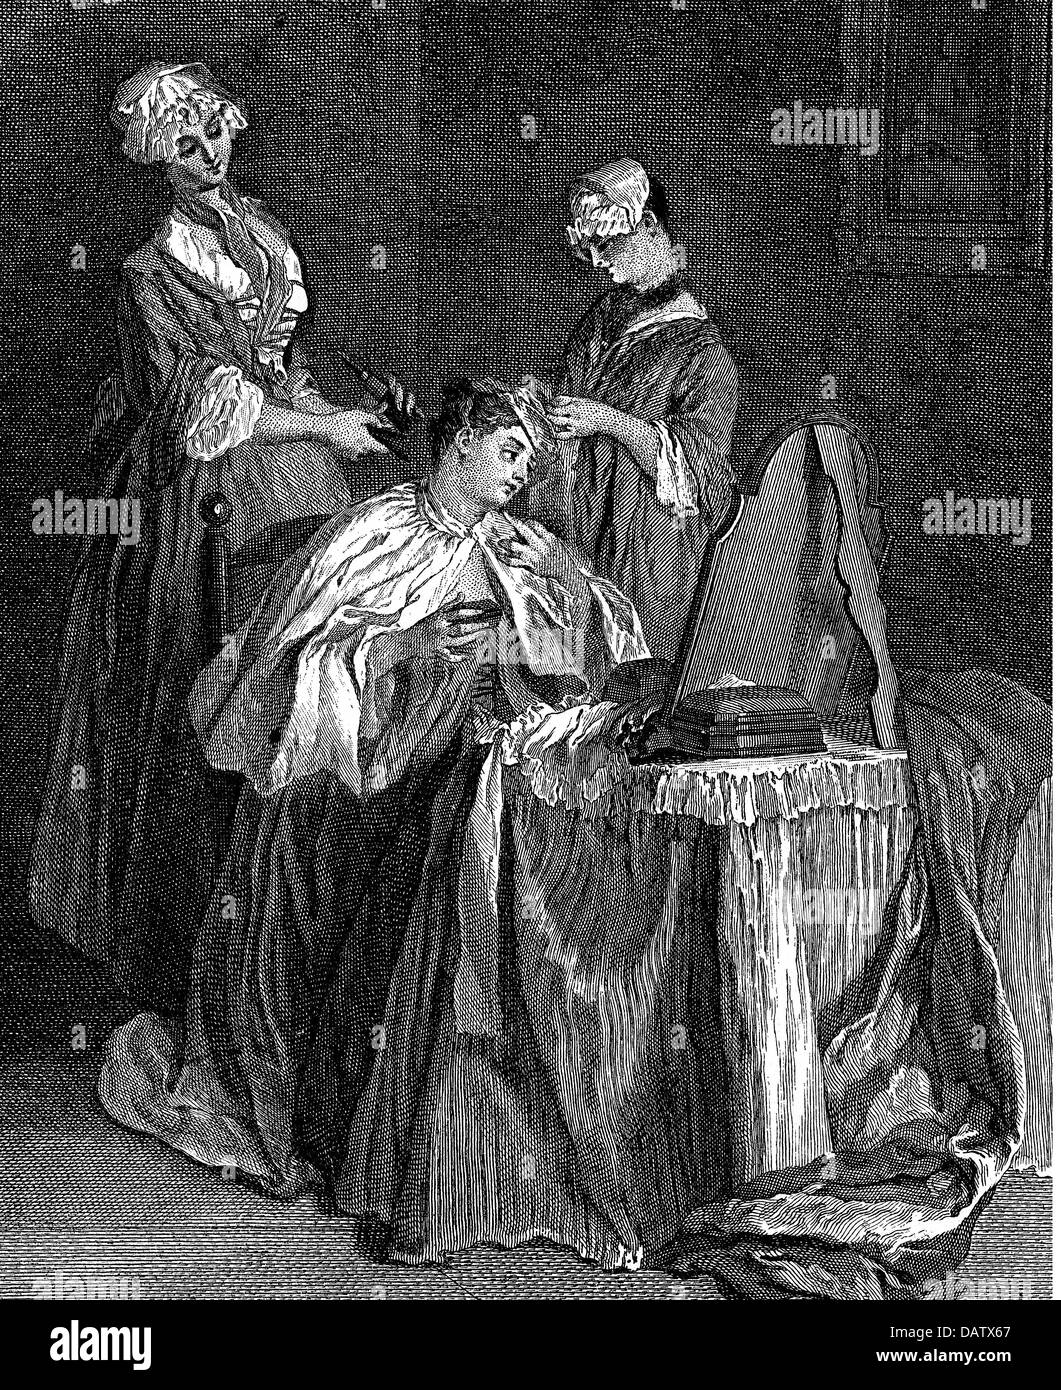 Les cosmétiques, les toilettes d'une dame, après peinture de Nicolas Lancret (1690 - 1745), gravure sur cuivre par M.Horthelms, 18e siècle, 18e siècle, graphique, graphiques, soins de beauté, demi-longueur, assis, s'asseoir, table de maquillage, coiffeuse, tables, commodes, miroirs, miroirs, cape, capes, cheveux, coiffure, coiffure, coiffure, coupe de cheveux, coupes de cheveux, coiffures, coupes de cheveux, soins des cheveux, servante, servantes, faire soi-même, constituant, rattraper, Jean - Baptiste, cosmétiques, cosmétiques, dame, mesdames, historique, historique, femme, femmes, femme, personnage, auteur de l'artiste n'a pas à être effacée Banque D'Images